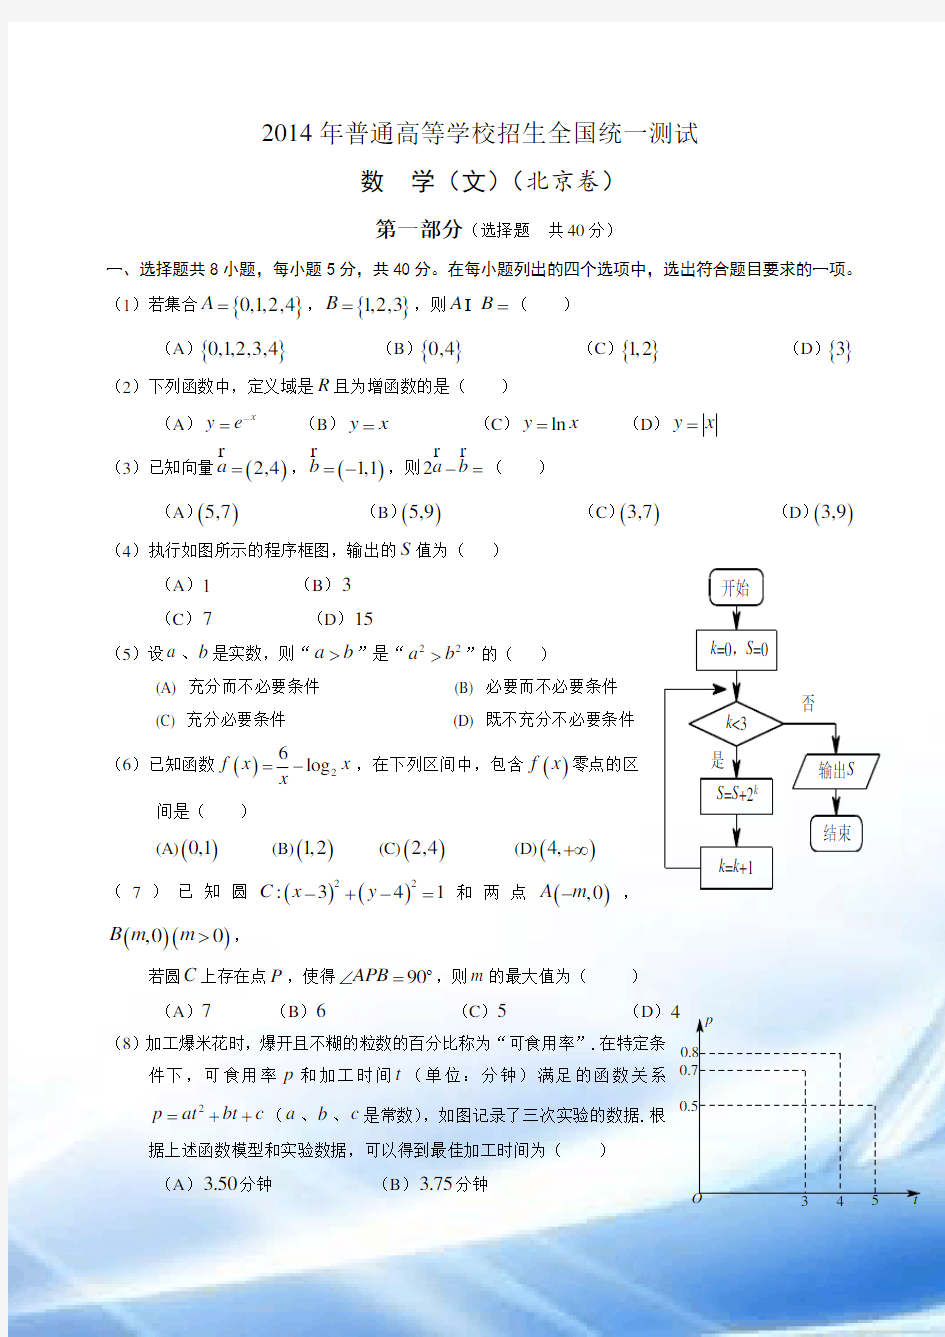 2014年北京高考(文科)数学试题及答案(完美版)